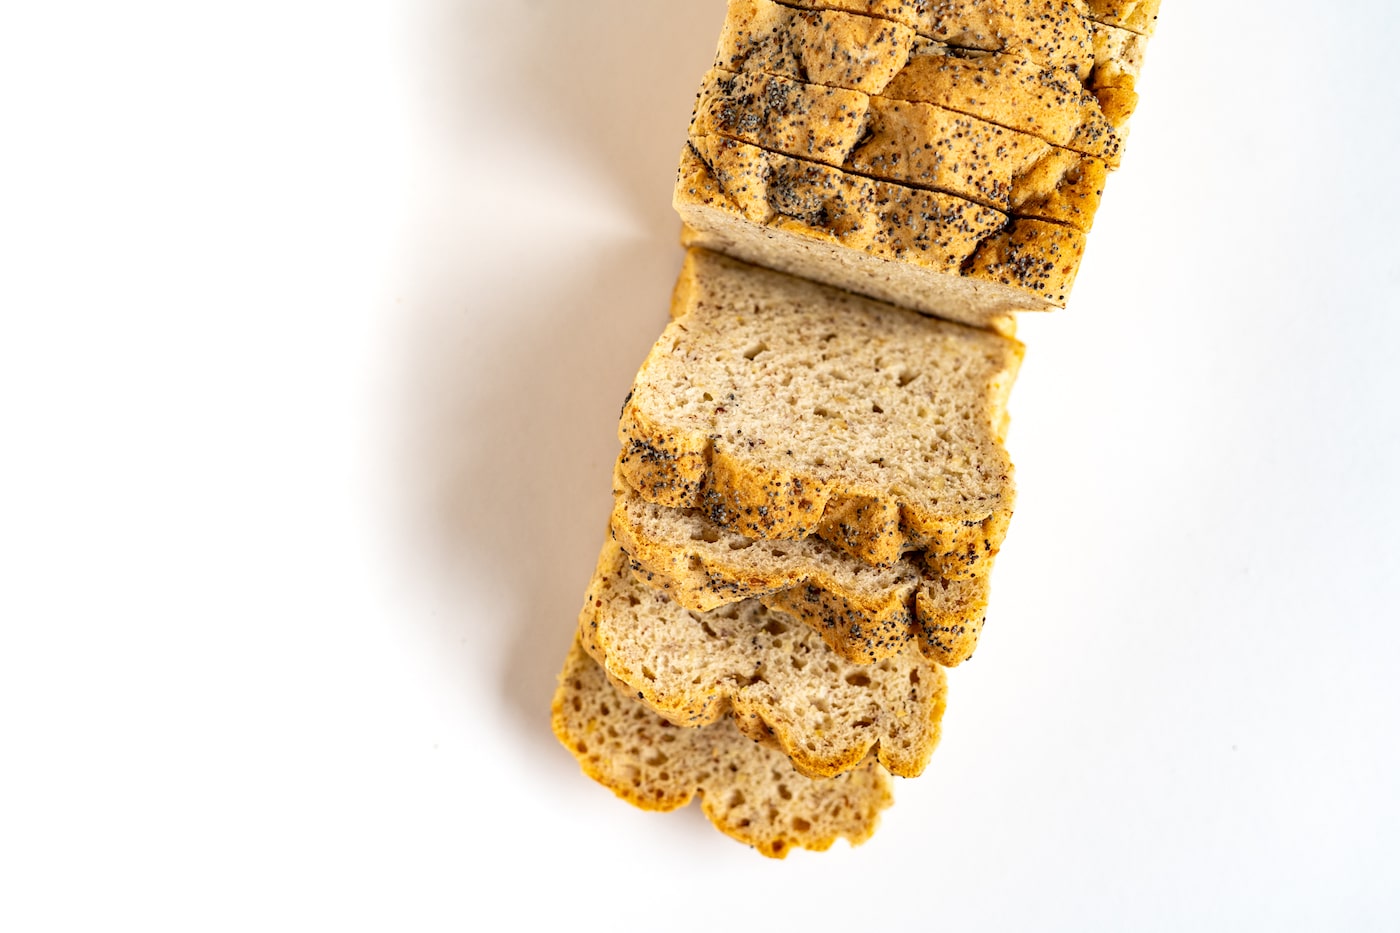 Bread from Revolution Bakery